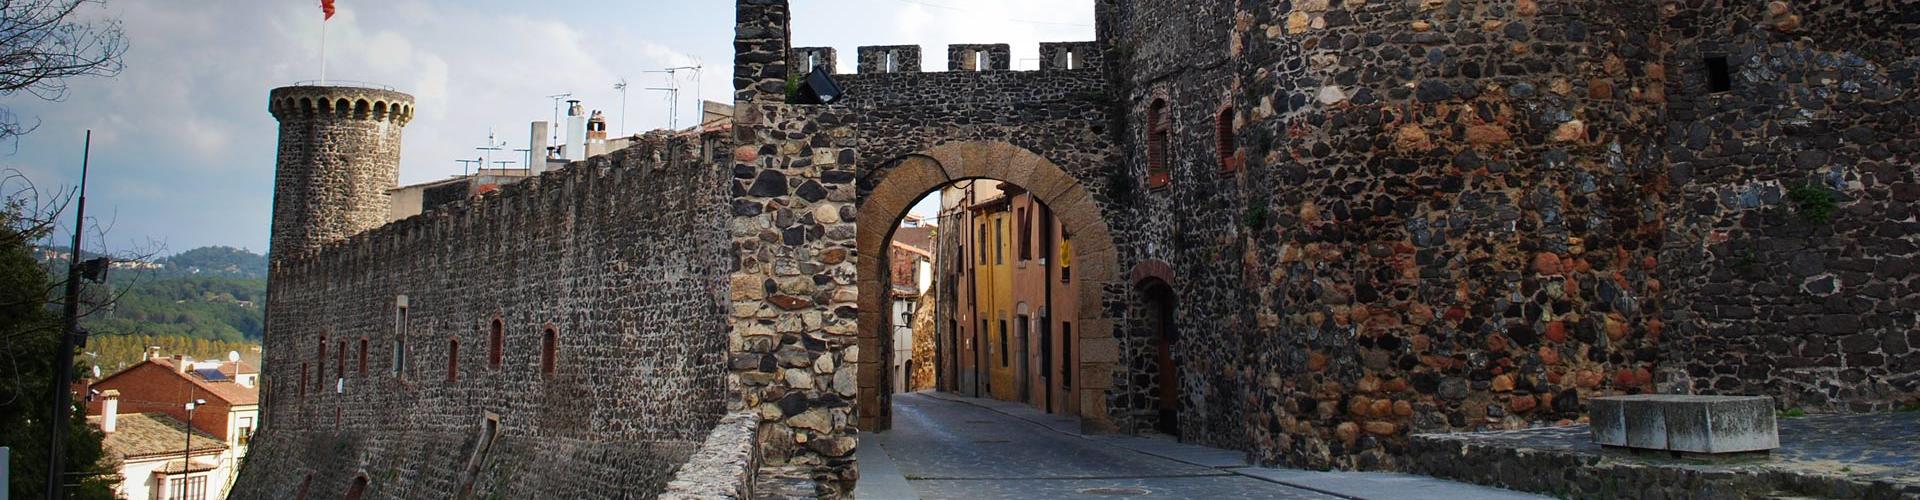 Porta de Barcelona, torres i muralles. Hostalric